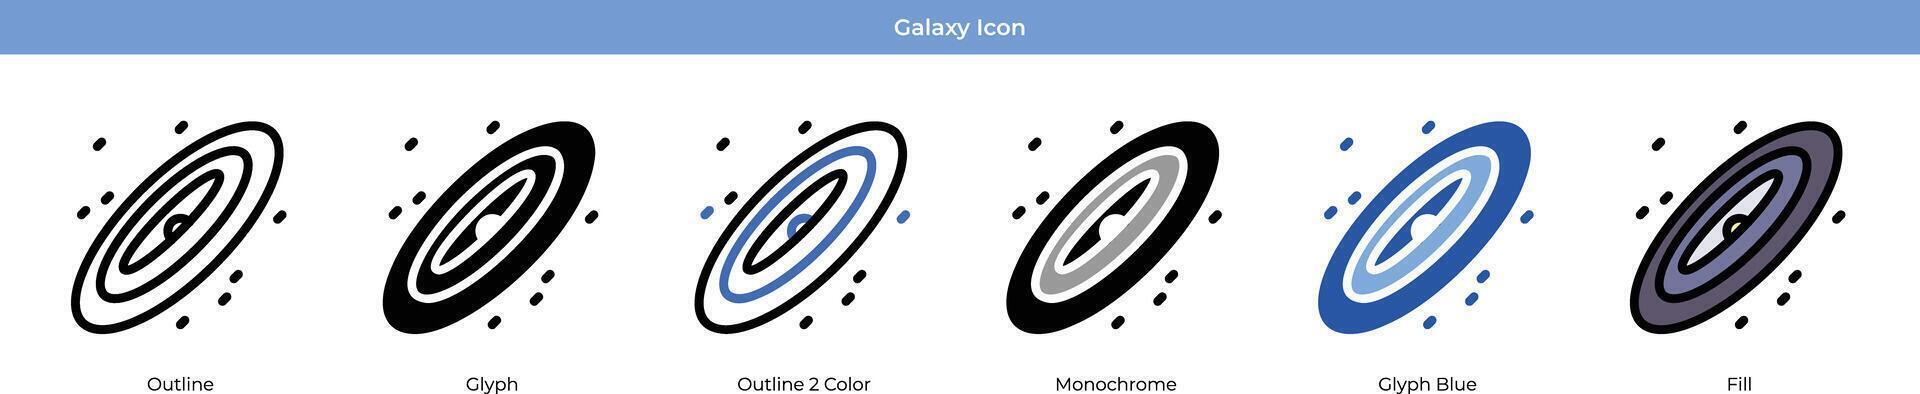 Galaxis Symbol einstellen vektor